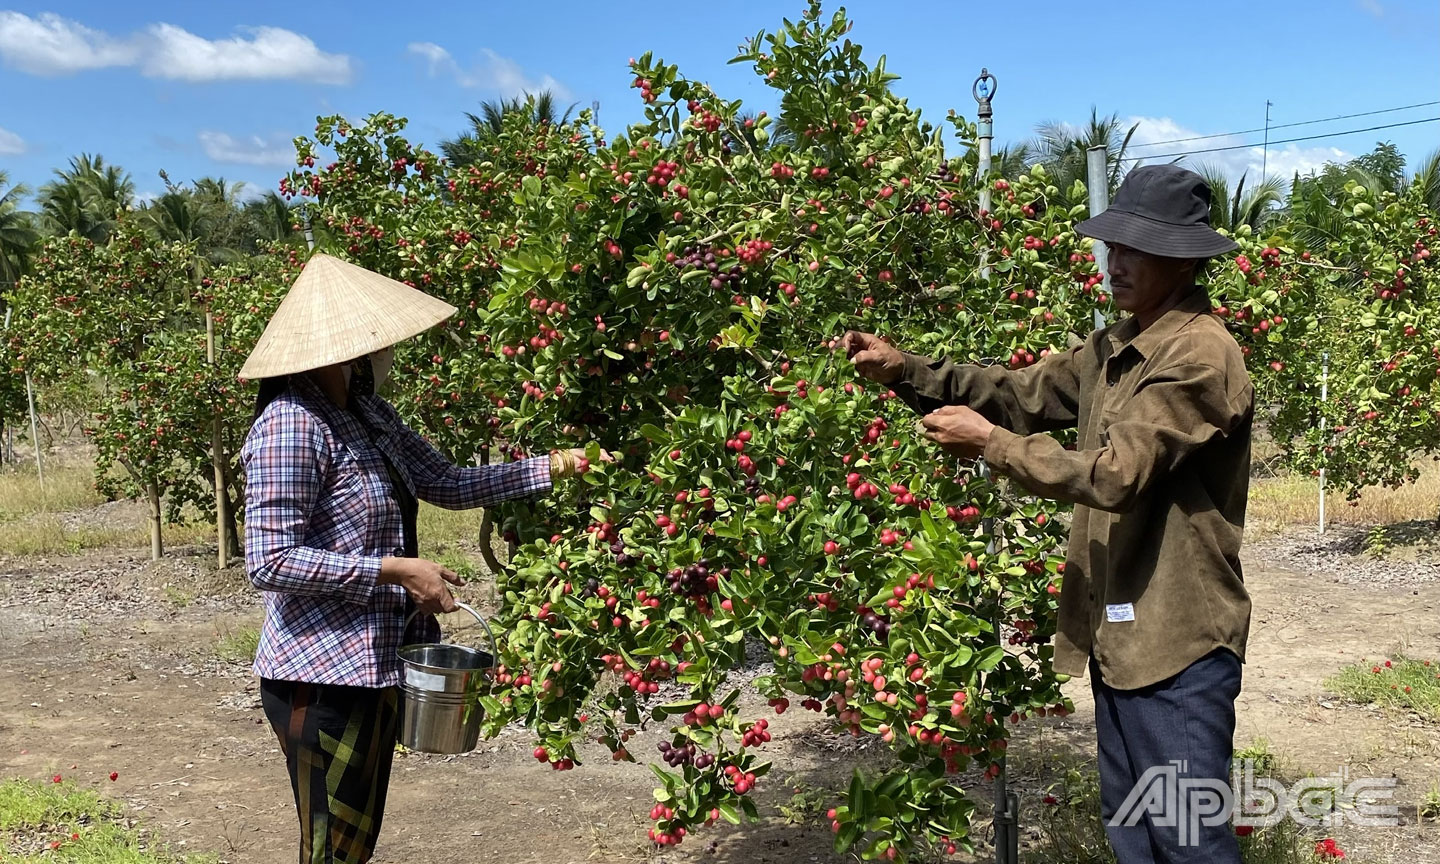  Gia đình anh Nguyễn Văn Thông đang chăm sóc vườn cây sirô.